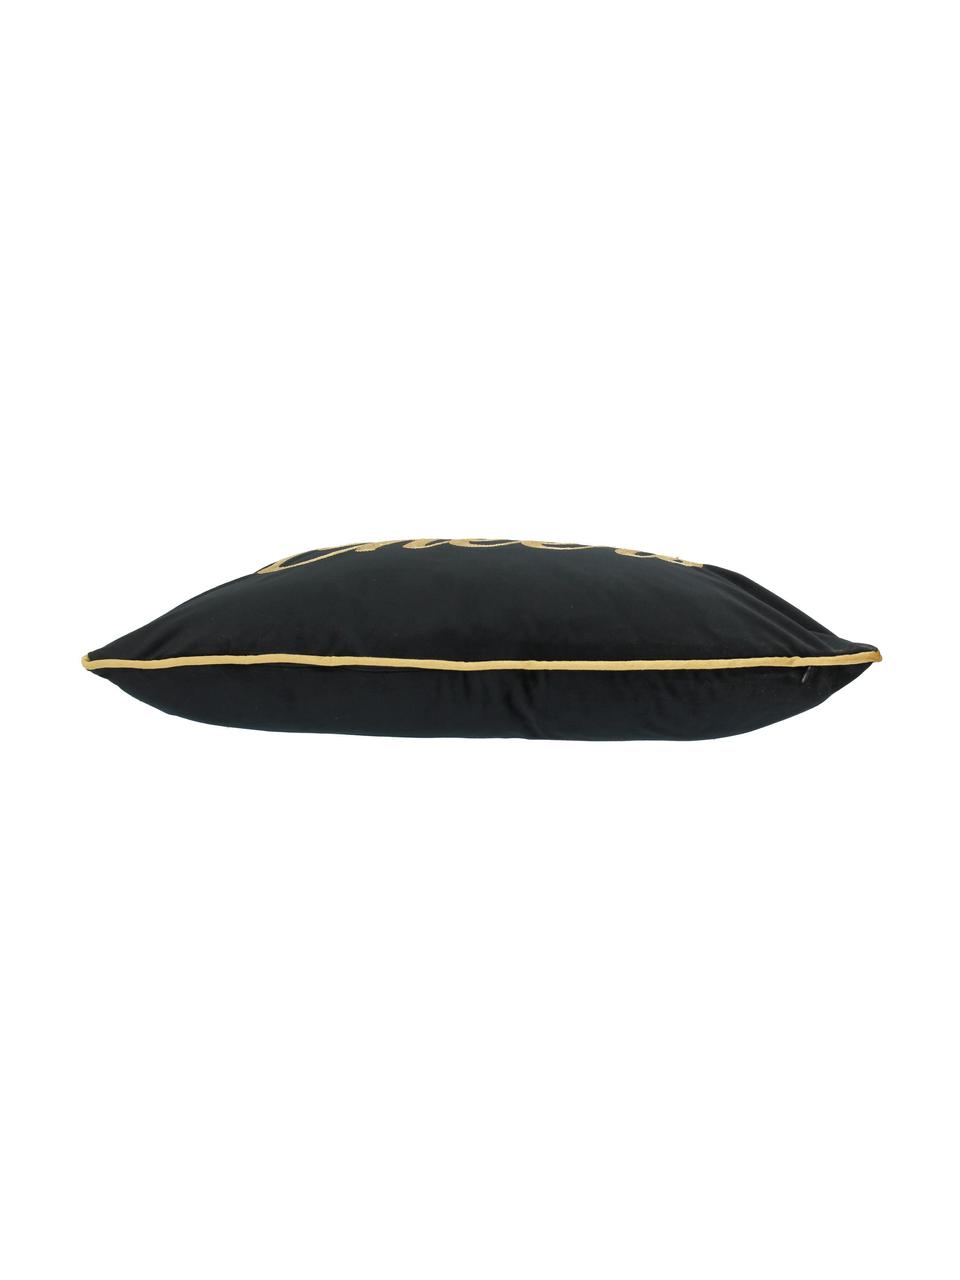 Poduszka z aksamitu z wypełnieniem Cheers, Tapicerka: poliester, Czarny, odcienie złotego, S 40 x D 60 cm